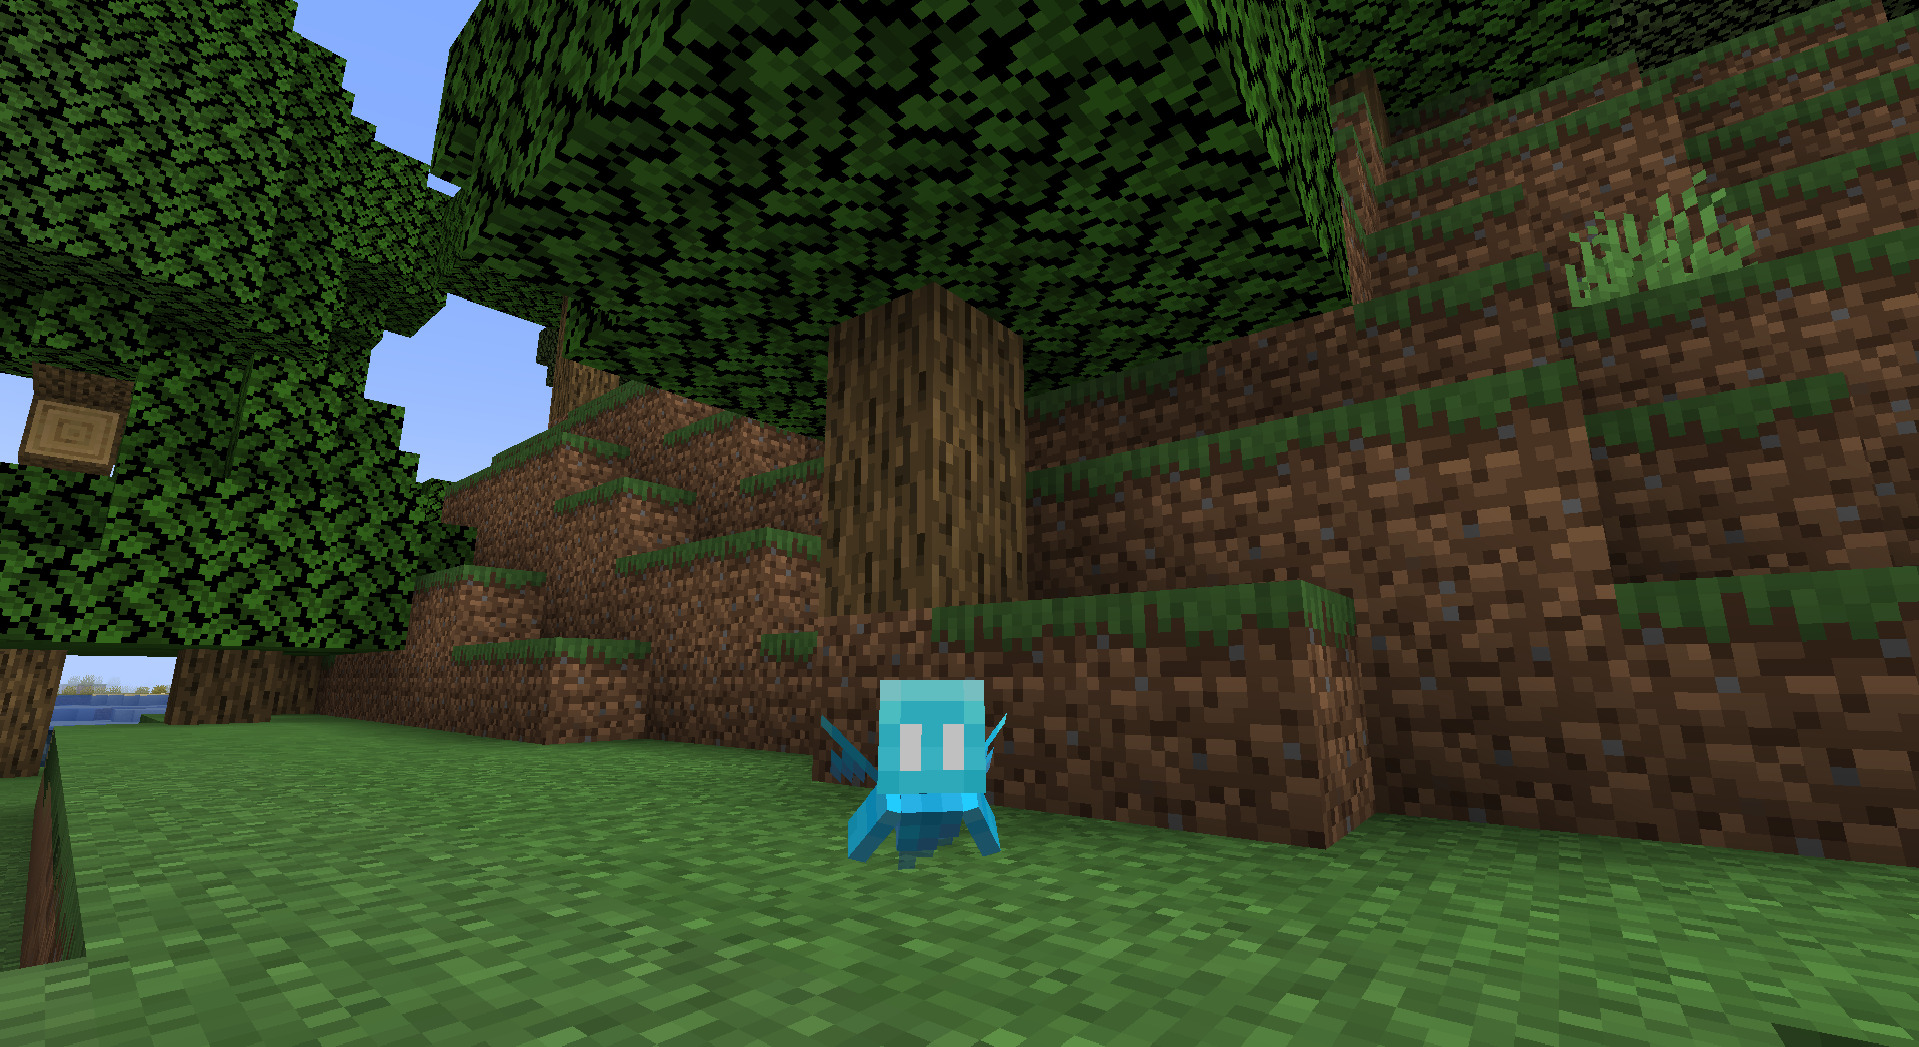 A screenshot of an Allay in Minecraft